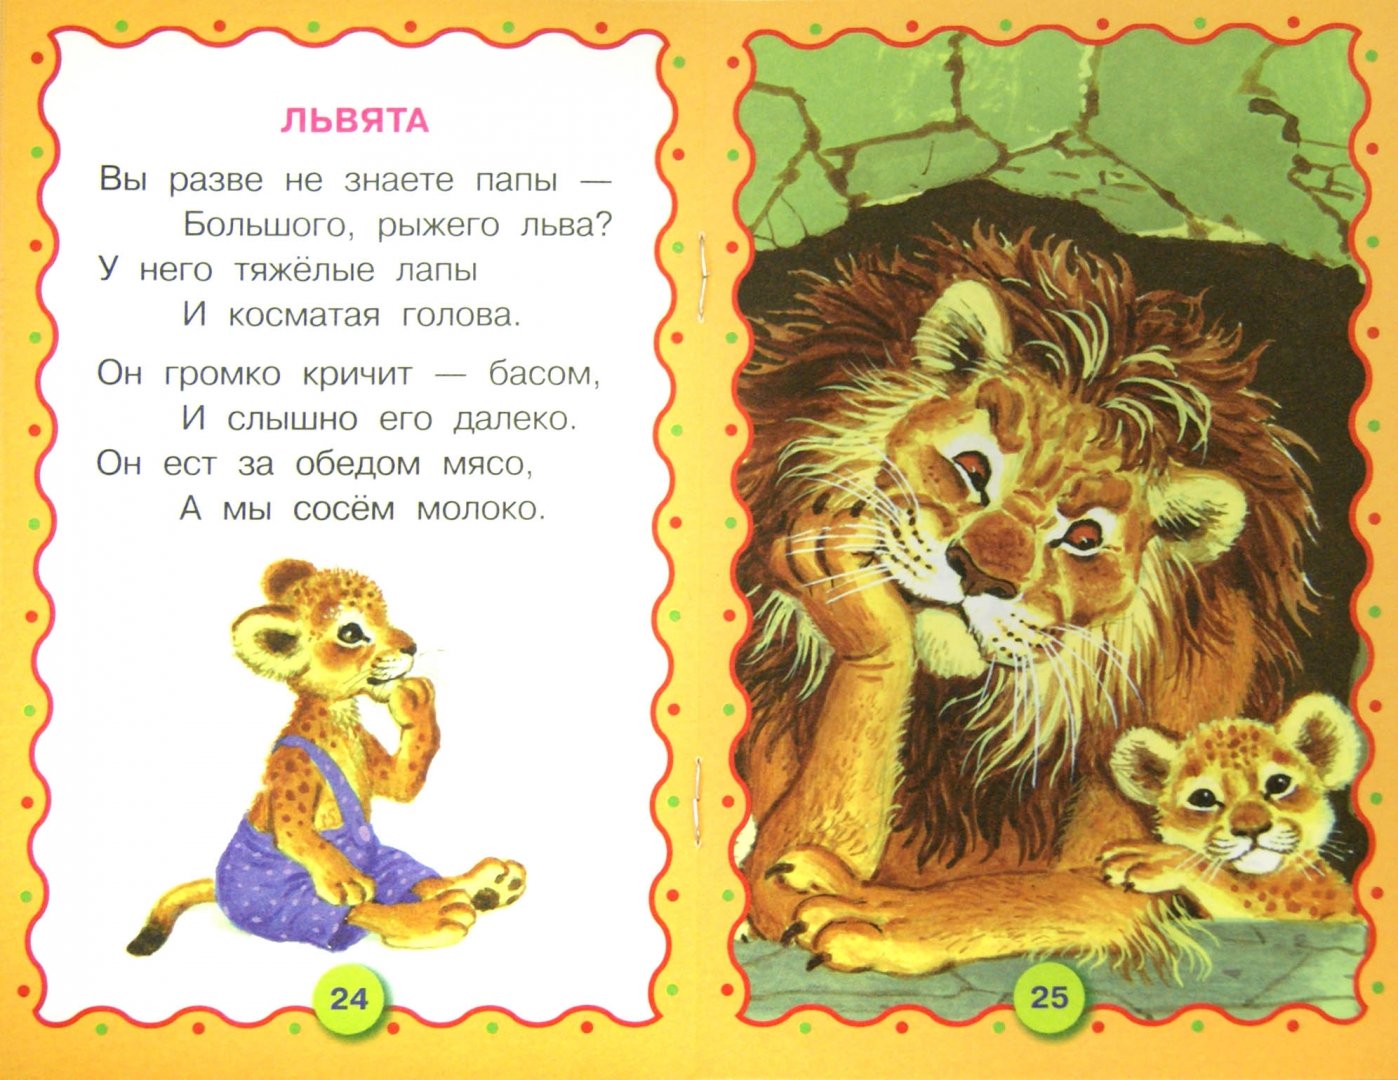 Сказки про шакала и льва